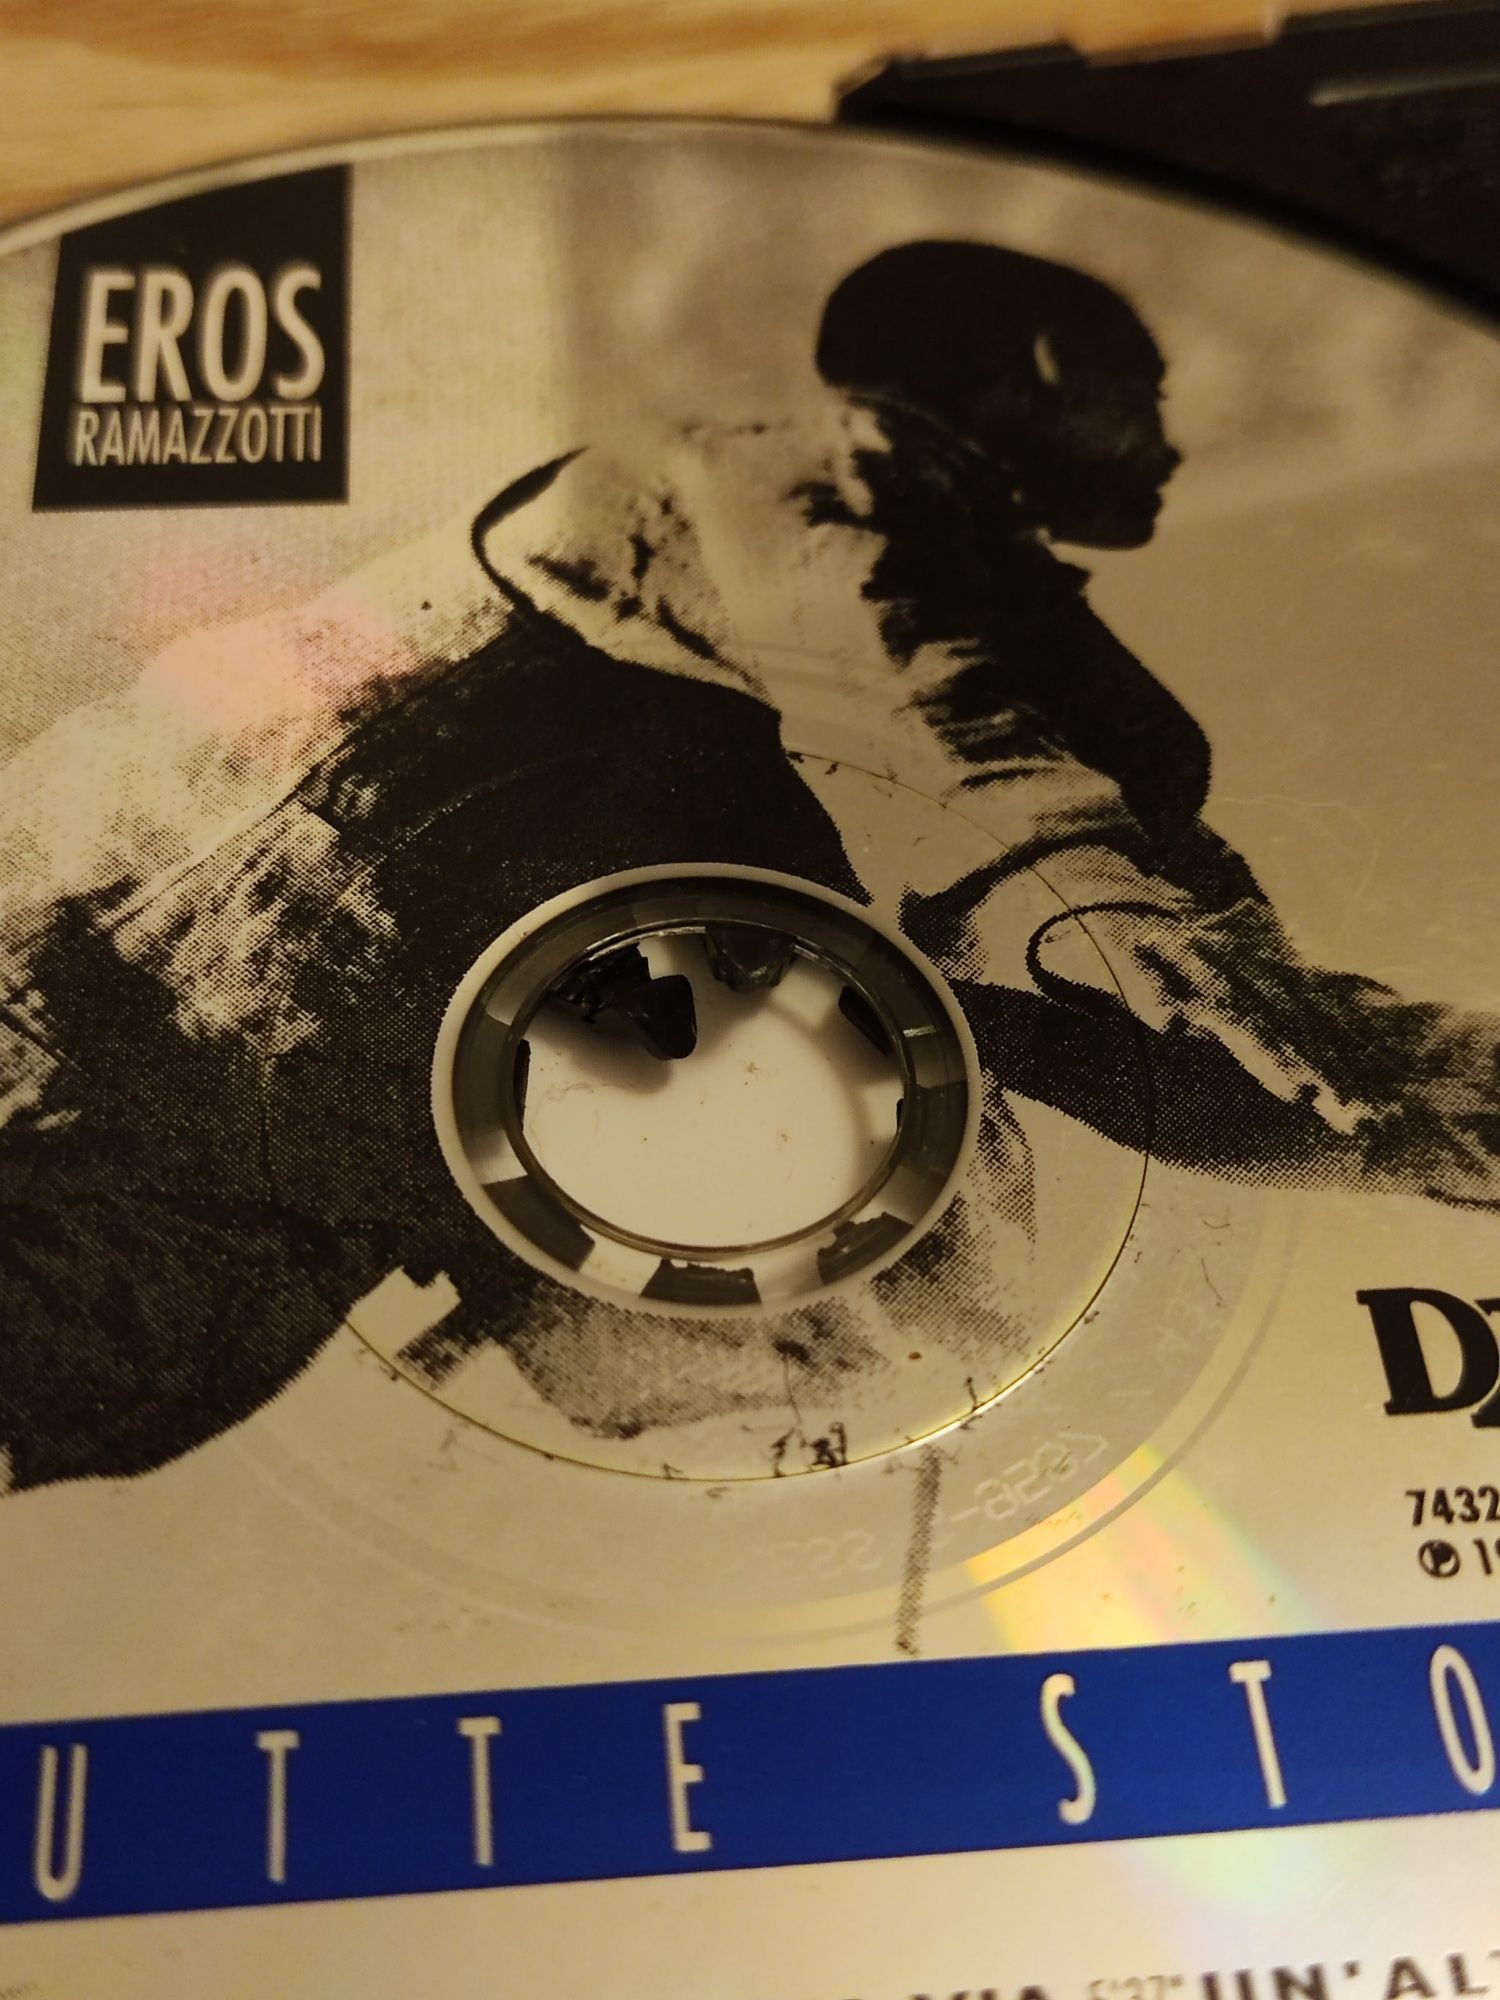 Eros Ramazzotti – Tutte Storie (CD original)